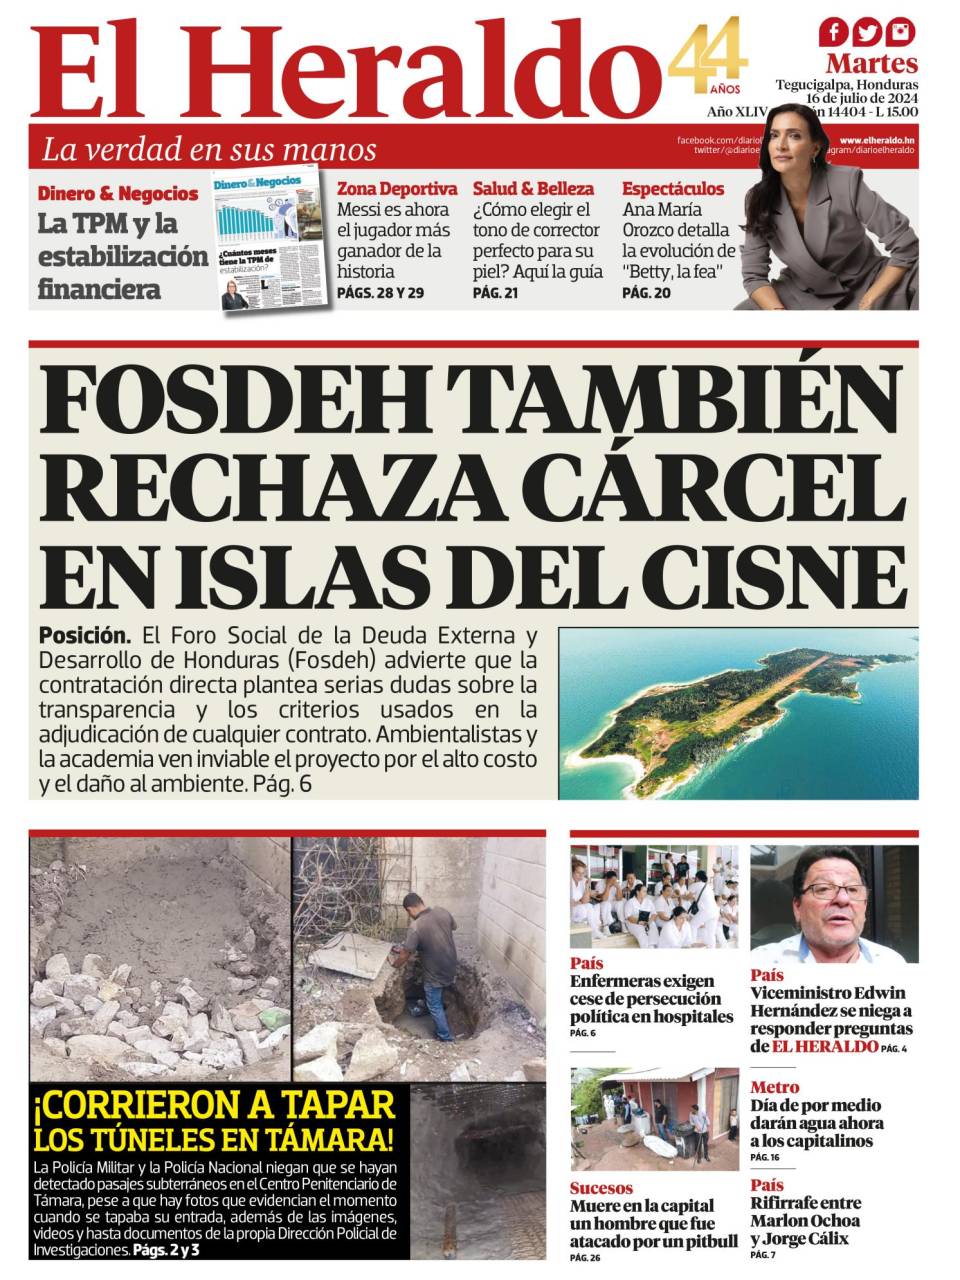 Fosdeh también rechaza cárcel en Islas del Cisne